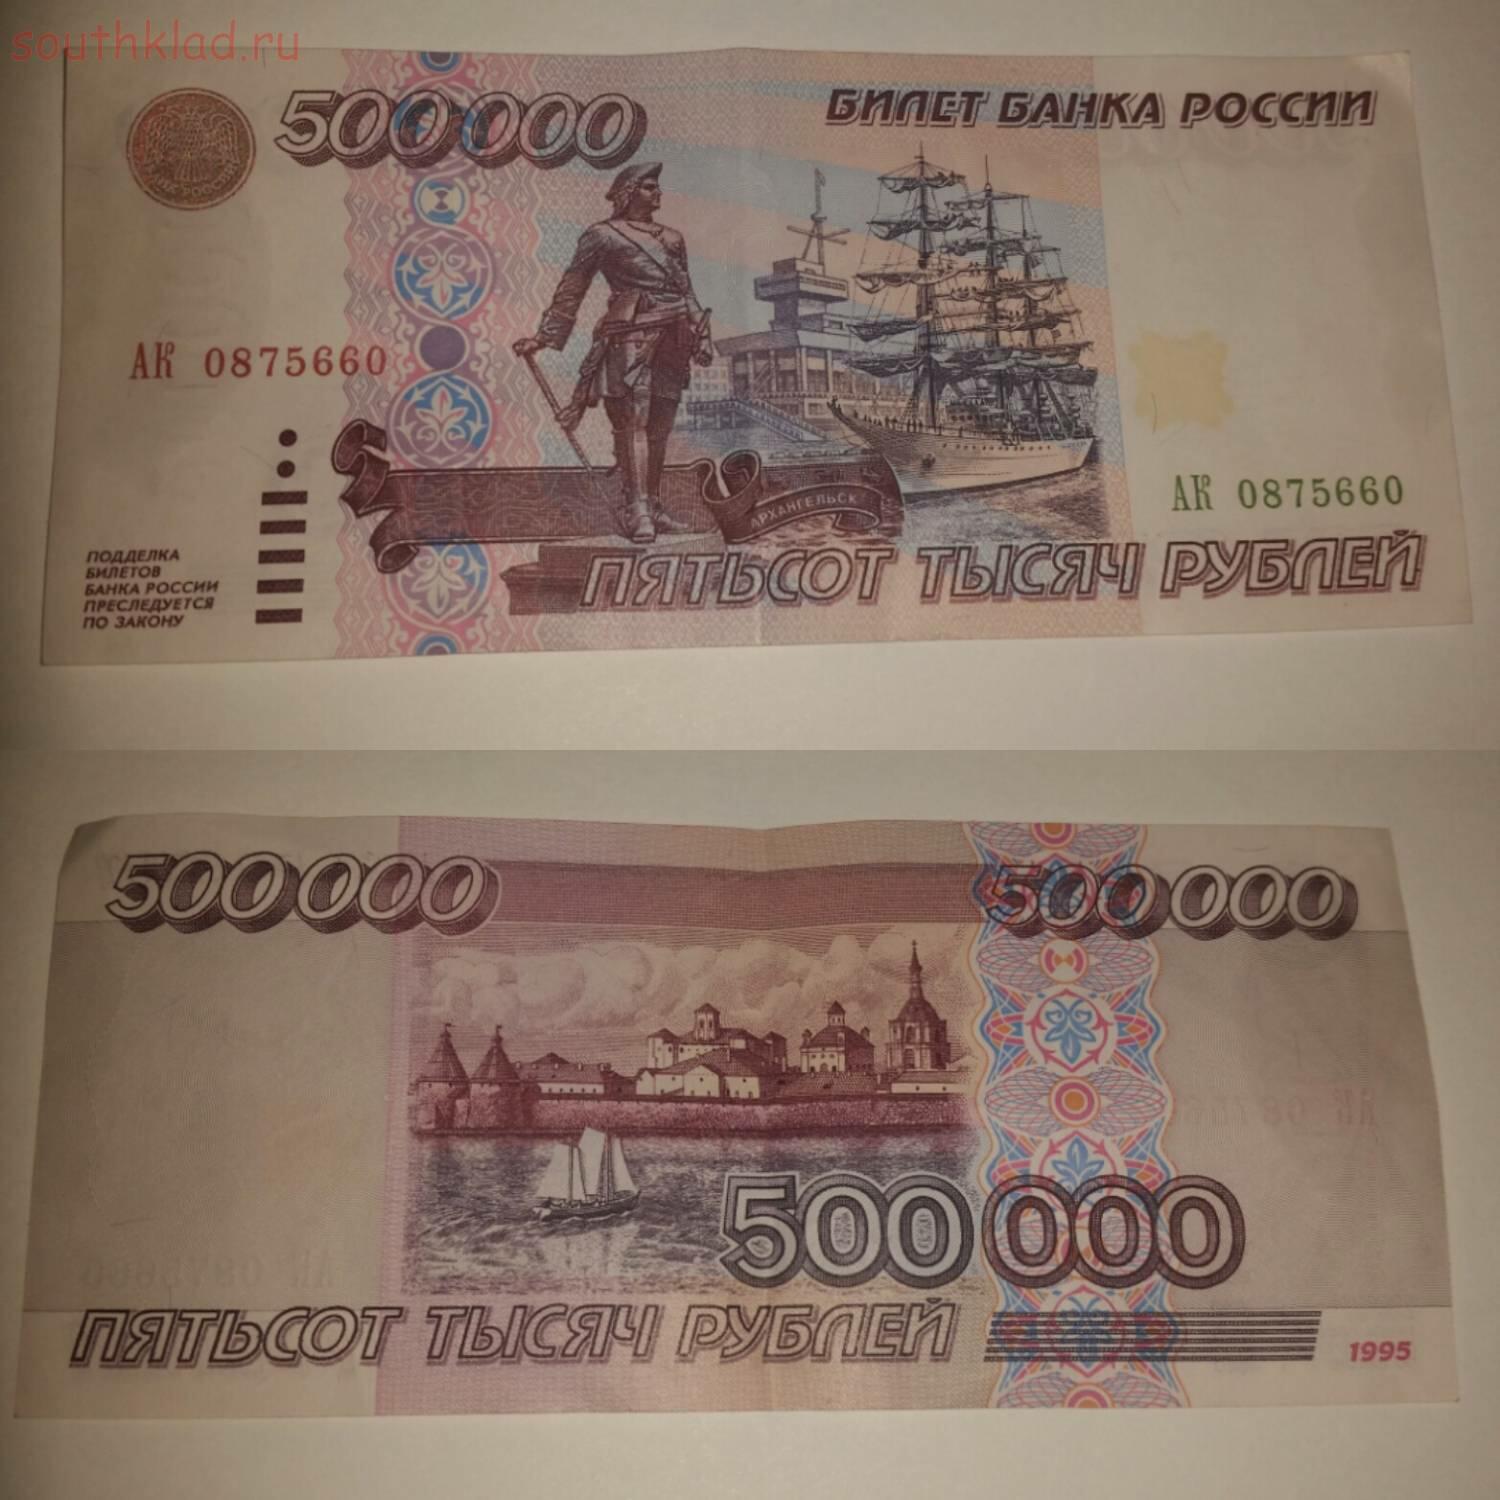 500 00 в рублях. Купюра 500 тысяч рублей 1995. Купюра 500 000 рублей 1995 года. Купюра 500 тысяч рублей 1995 года. 500000 Рублей банкнота.